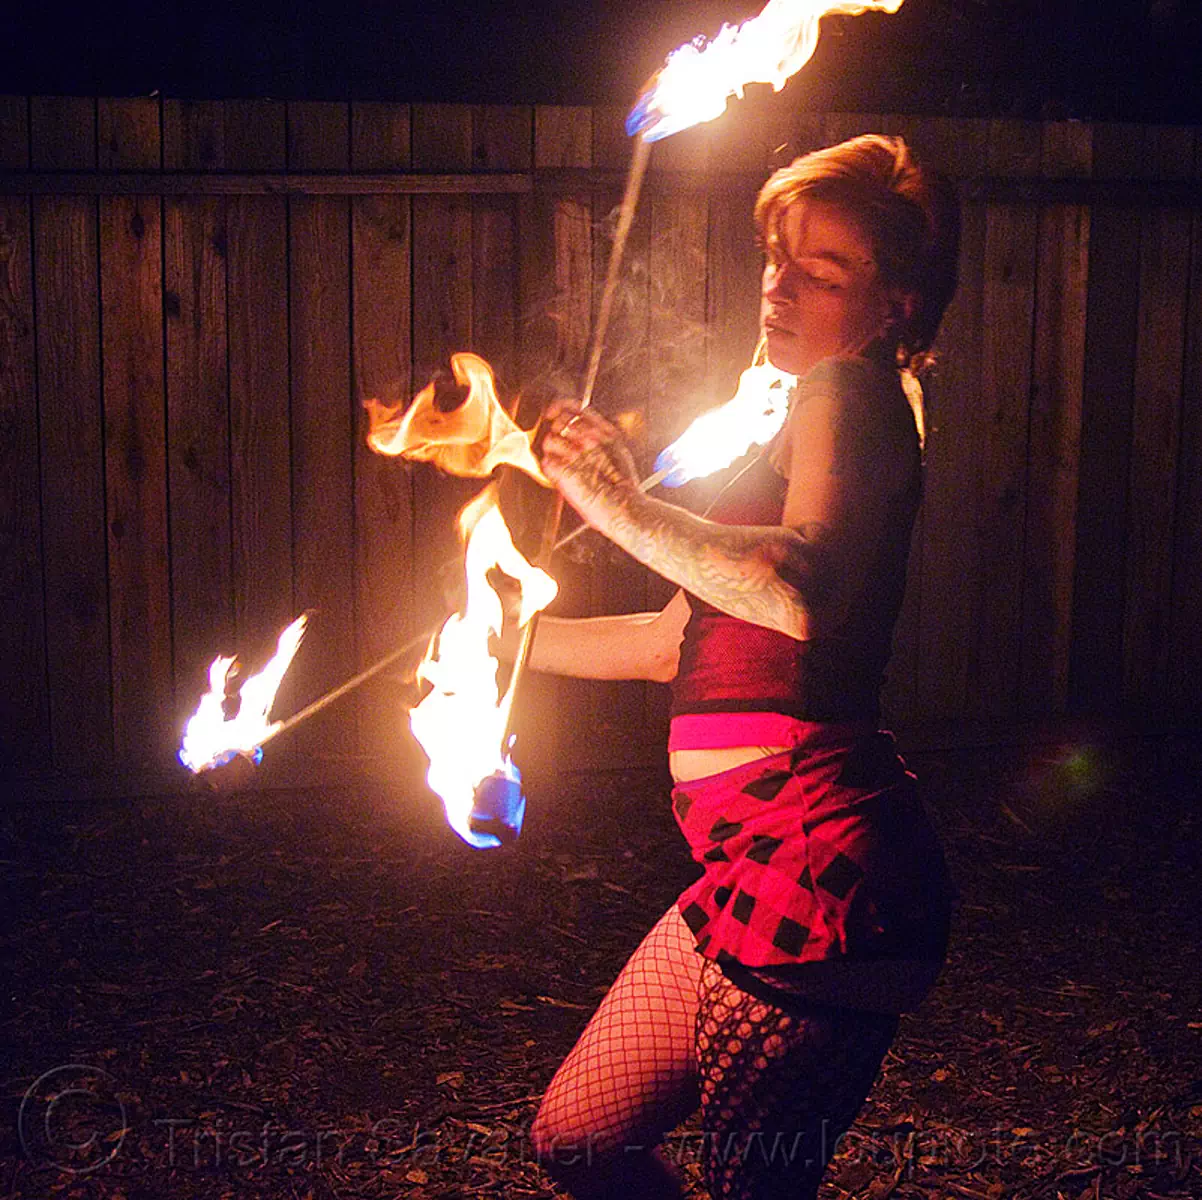 spinning fire staffs - leah, fire dancer, fire dancing, fire performer, fire spinning, fire staffs, fire staves, leah, night, woman